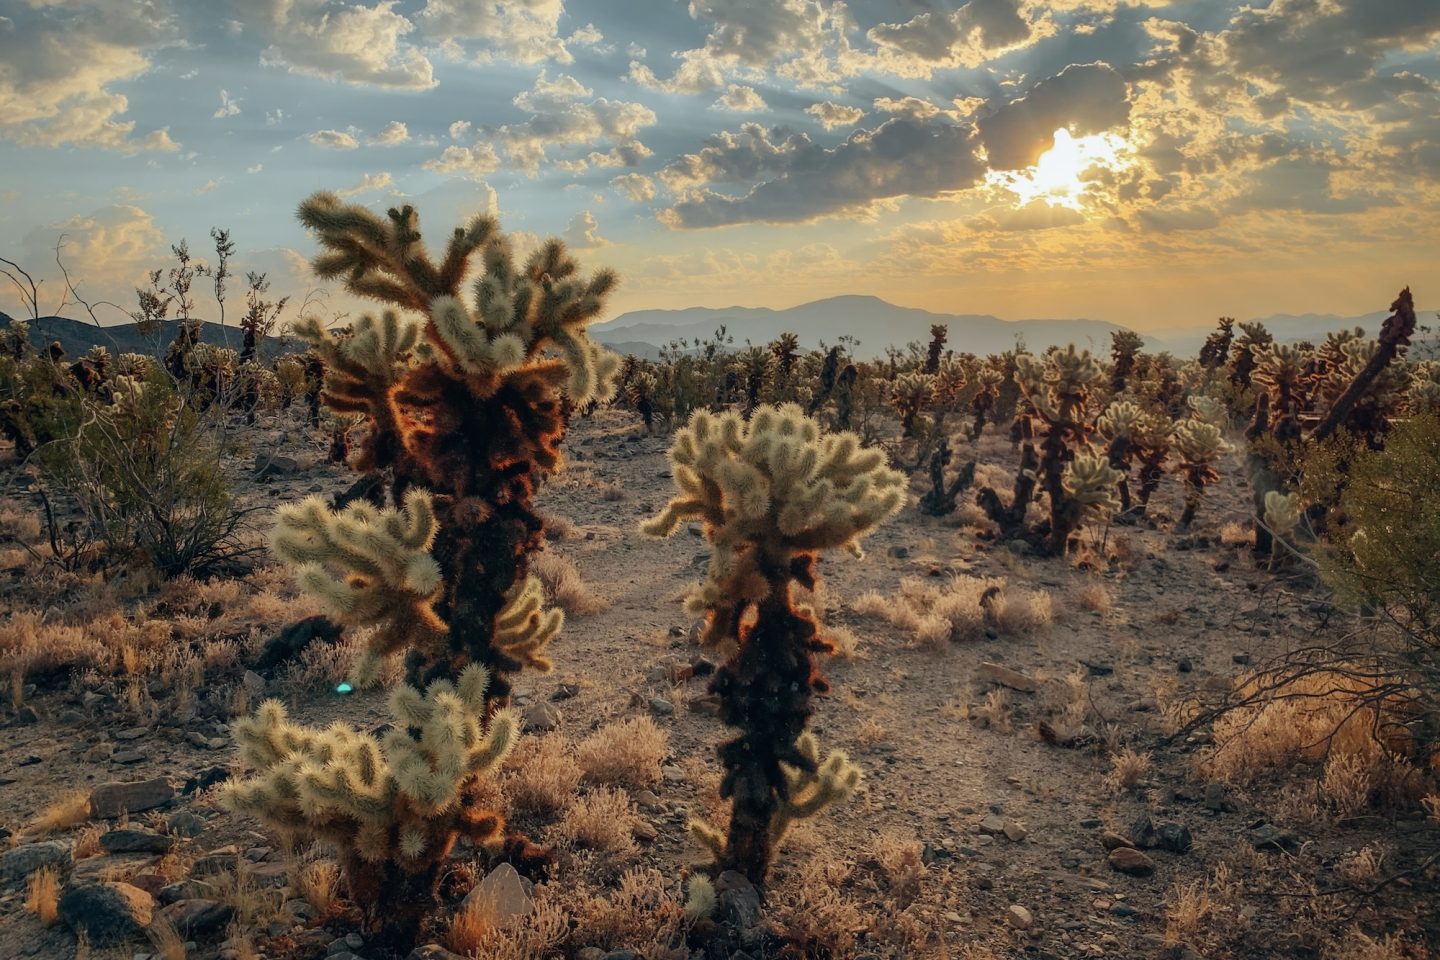 Cholla Cactus Garden - Joshua Tree National Park, California